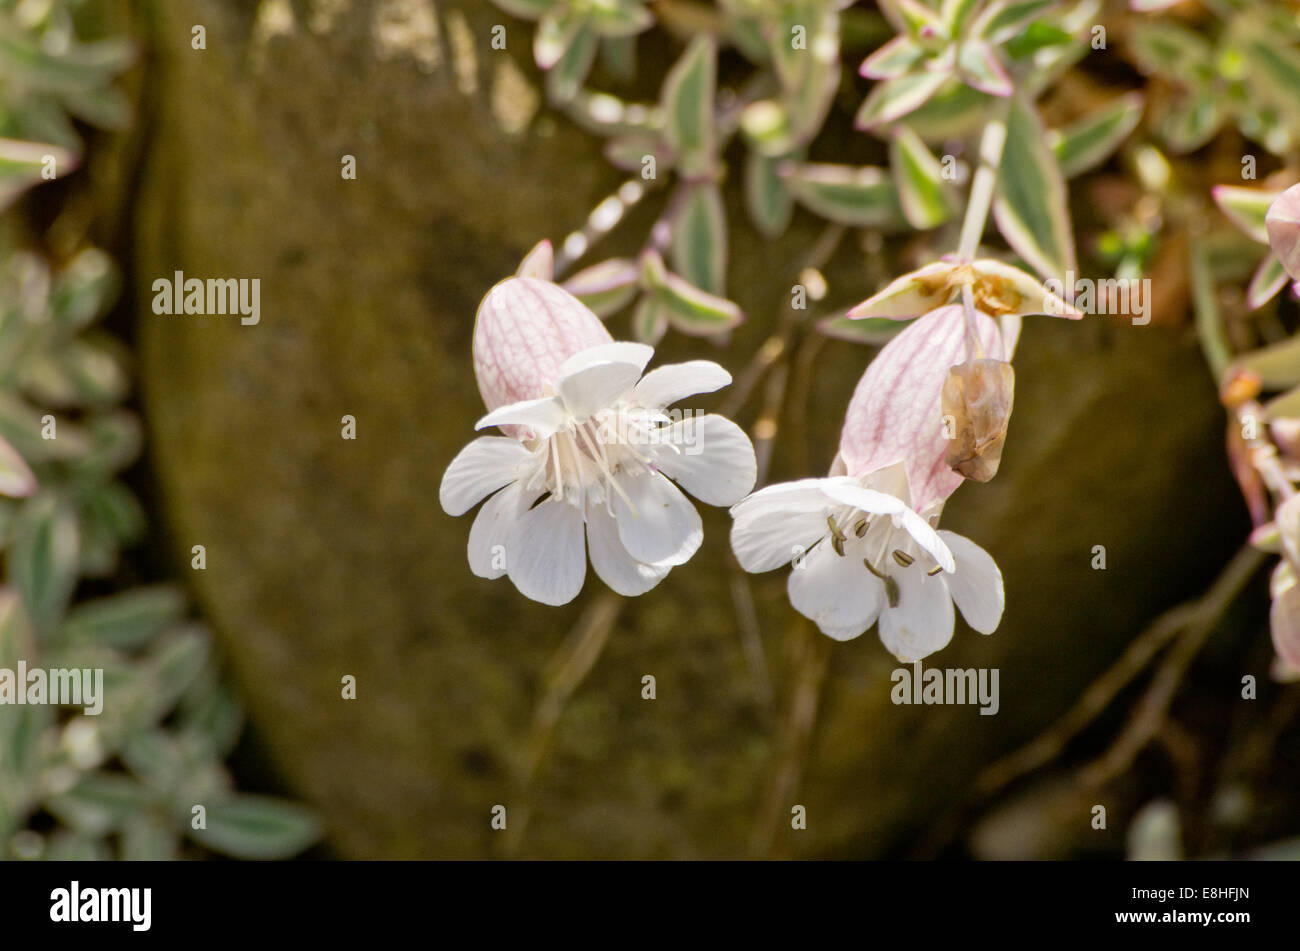 Silene uniflora Druetts Variagated Stock Photo